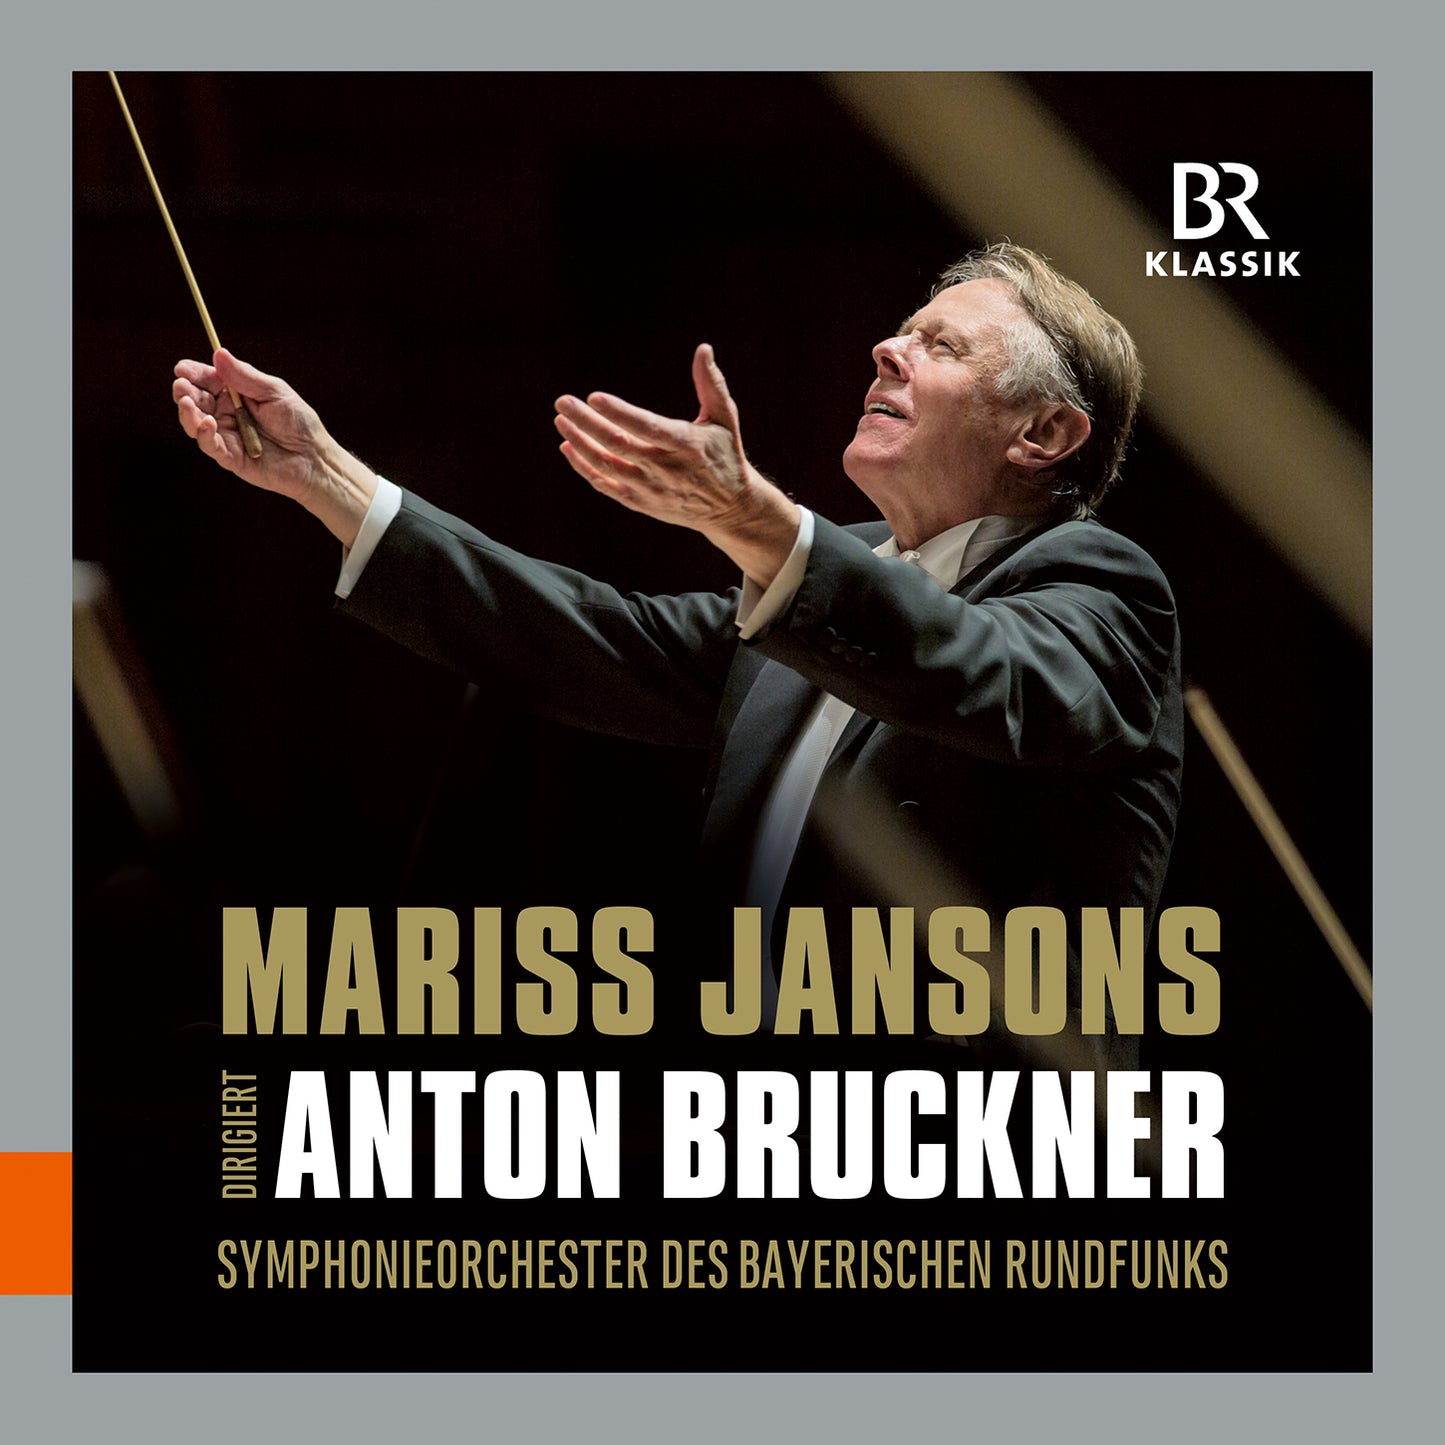 Anton Bruckner: Symphonies Nos. 3, 4, 6, 7, 8, 9  Symphonieorchester Des Bayerischen Rundfunks, Jansons